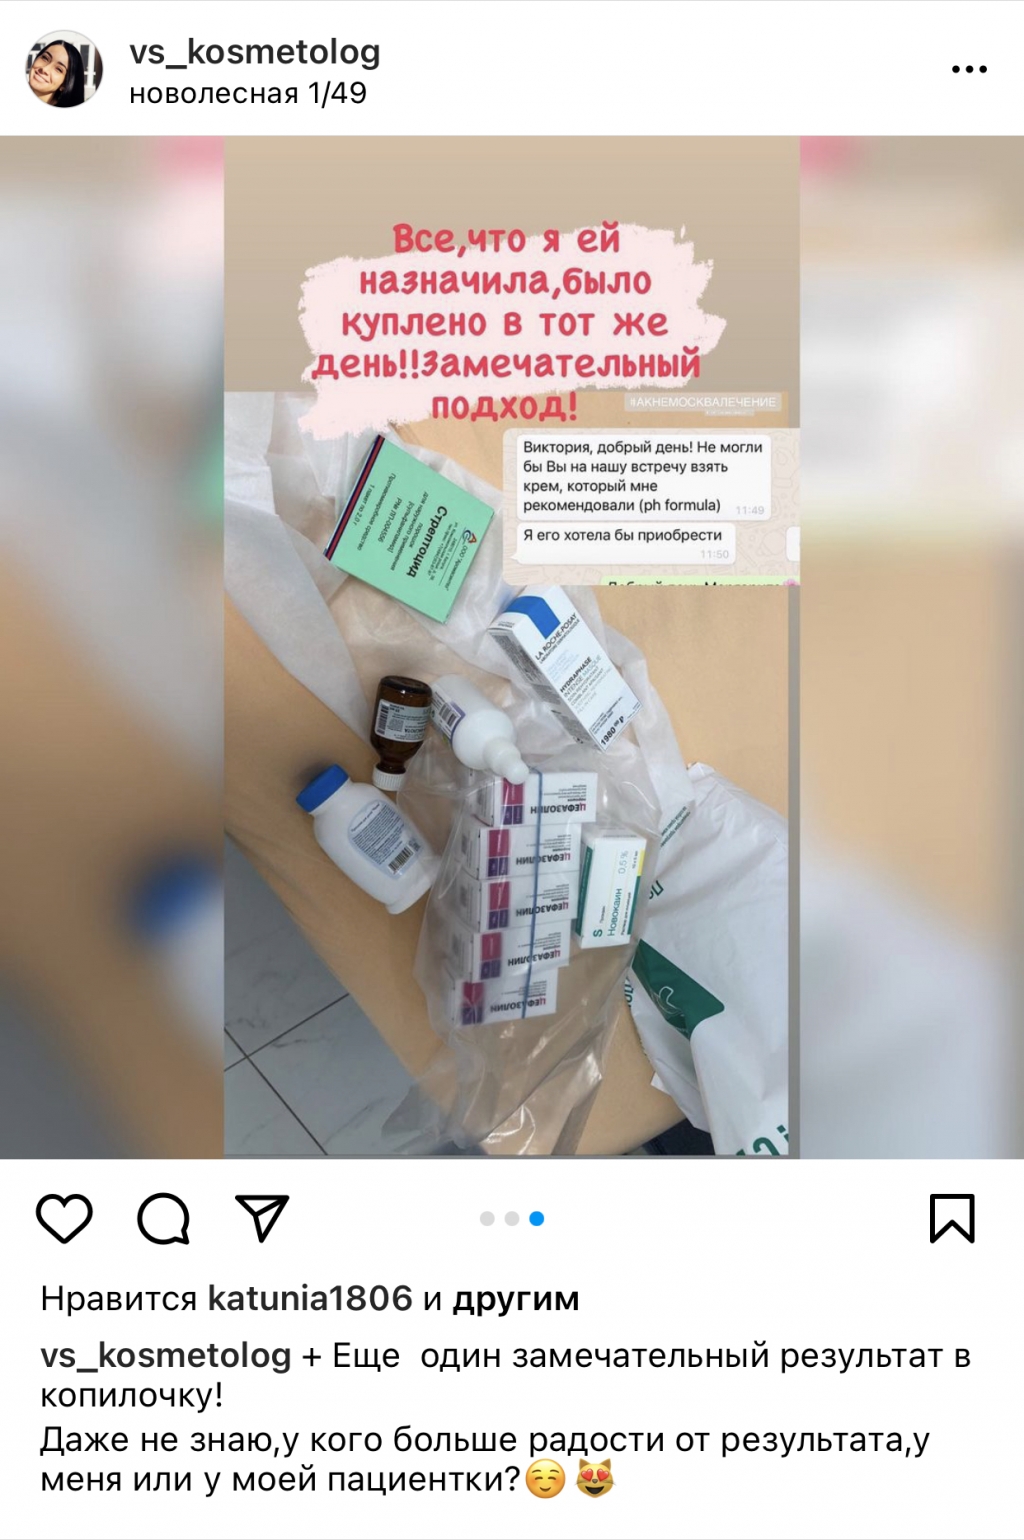 Косметолог Мочалова Виктория Ильинична - Проводит процедуры без мед образования